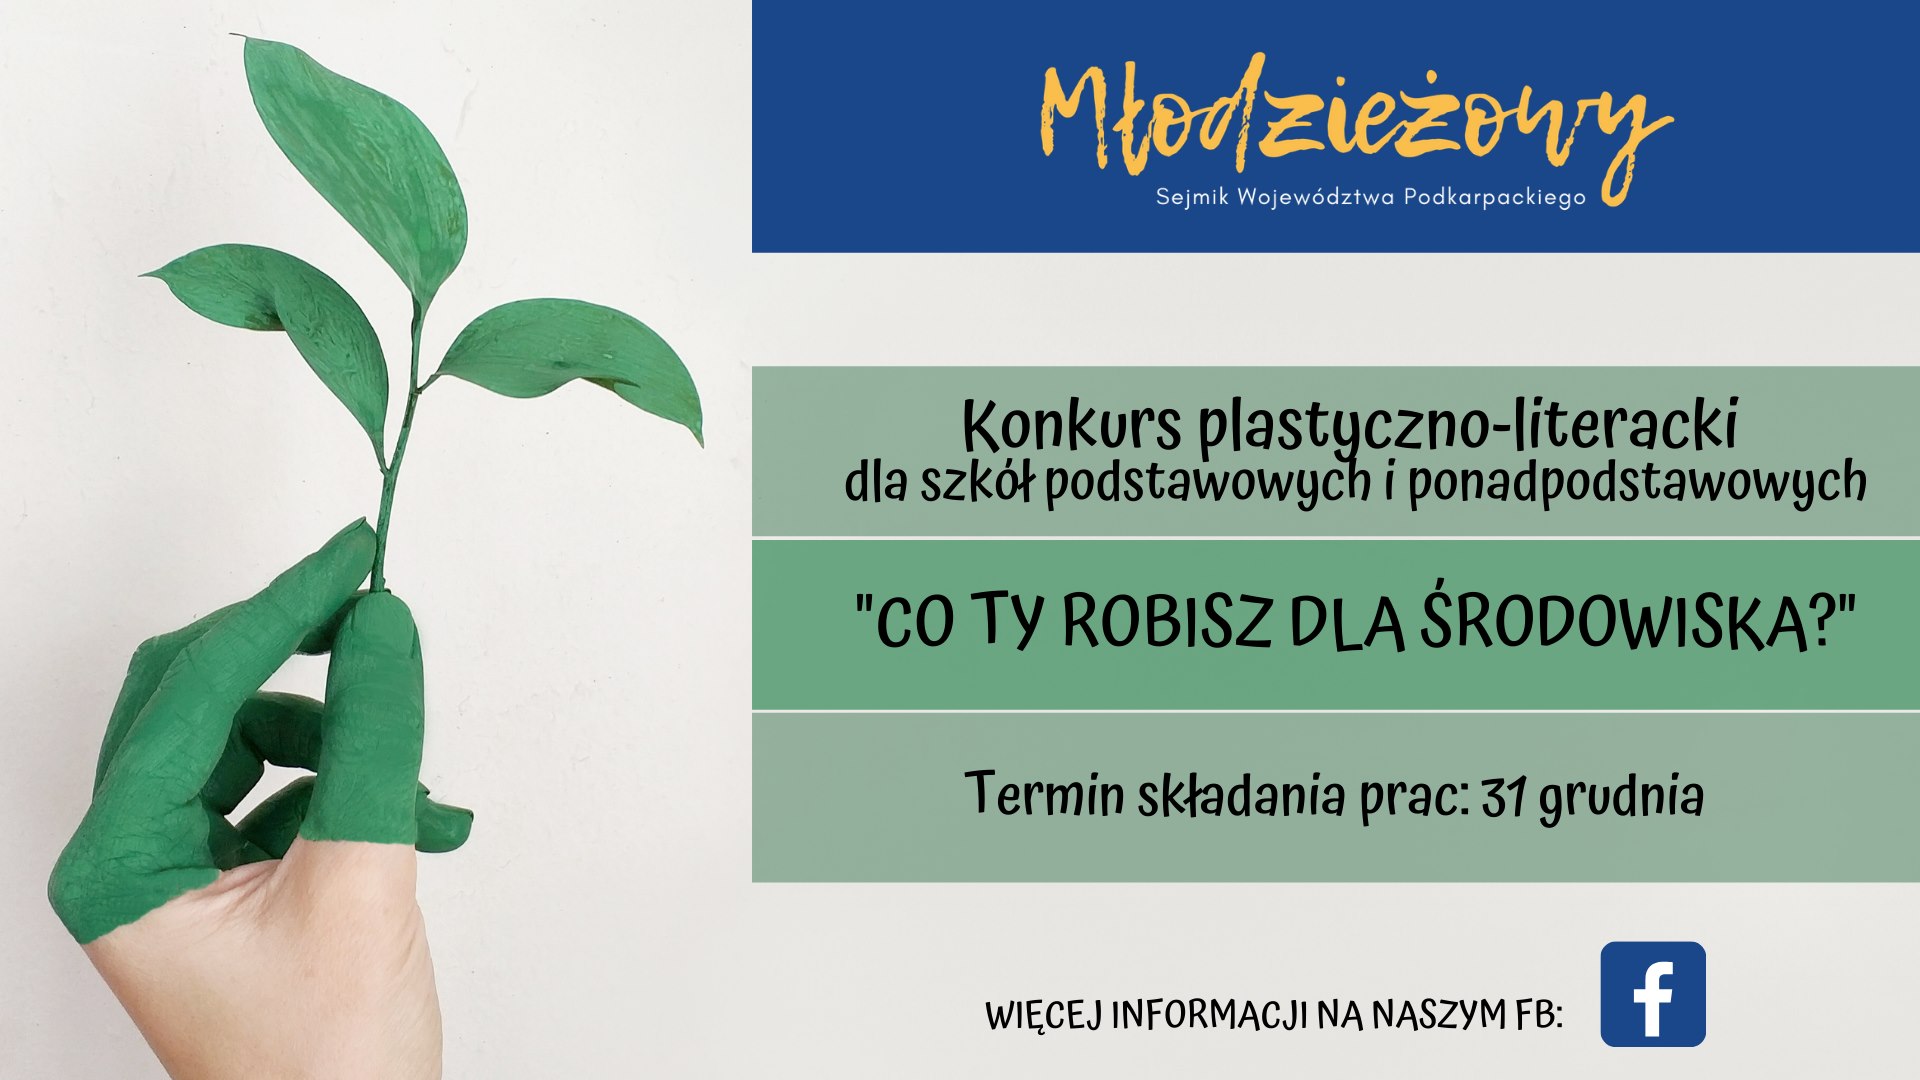 Młodzieżowy Sejmik Województwa Podkarpackiego zaprasza dzieci i młodzież do udziału w konkursie: „Co ty robisz dla środowiska?”